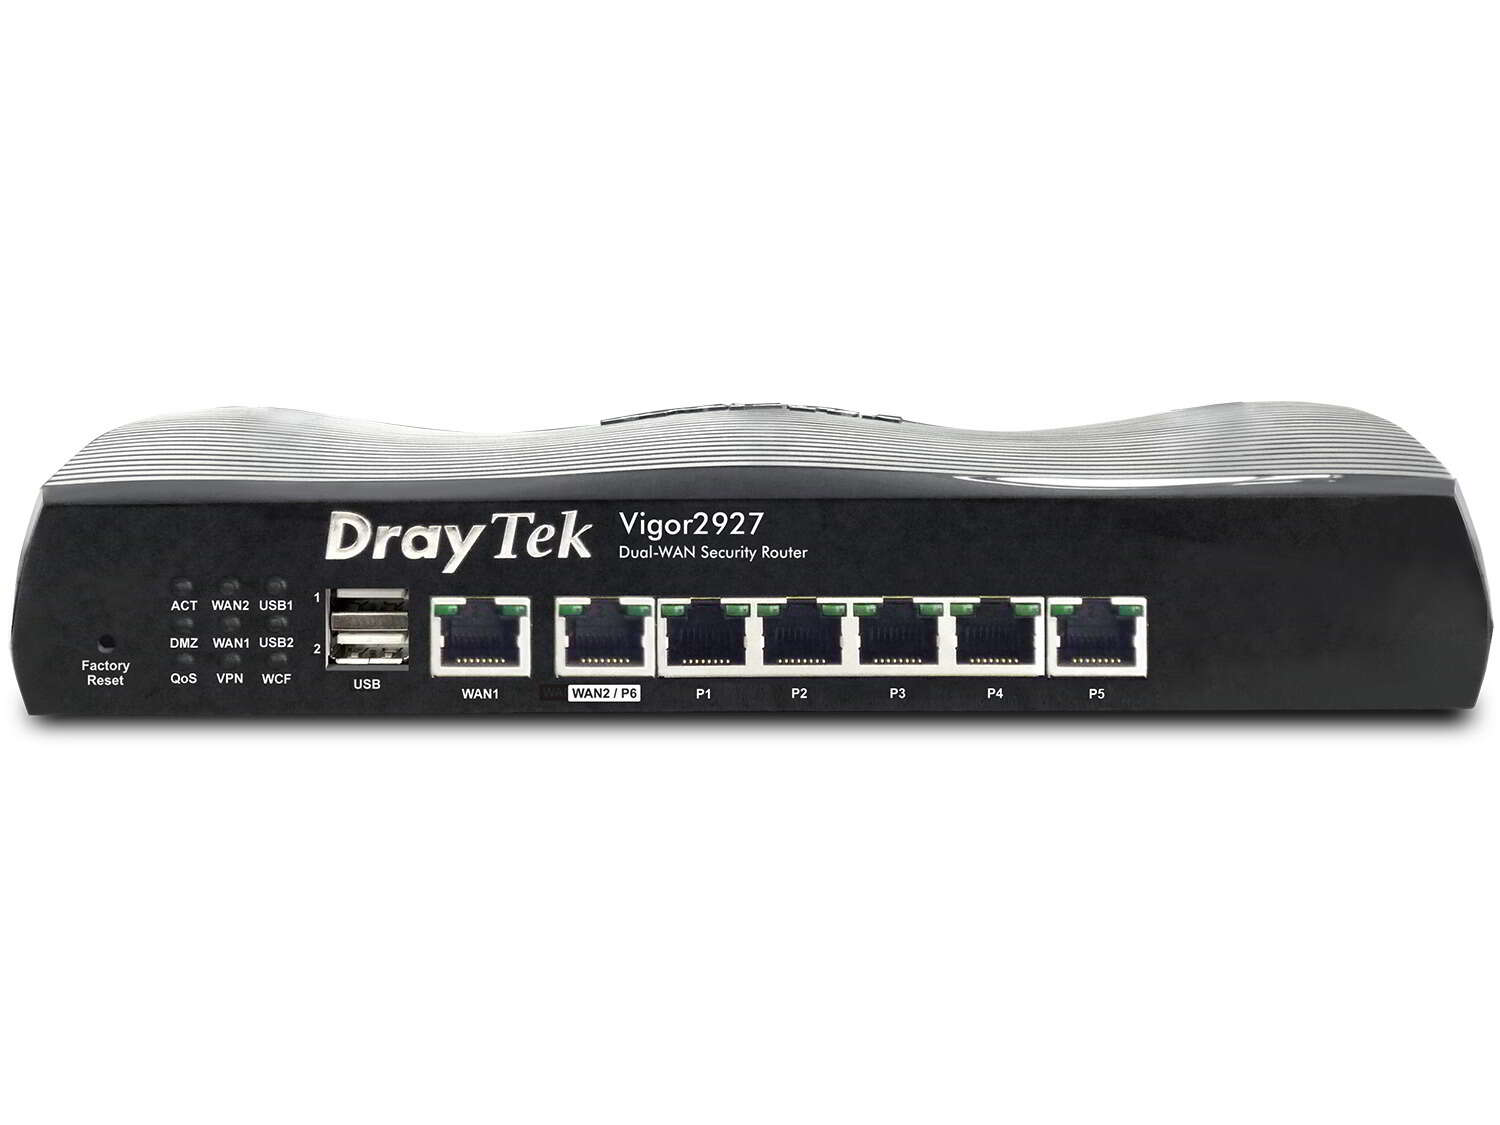 Draytek vigor 2927 dual-band gigabit router